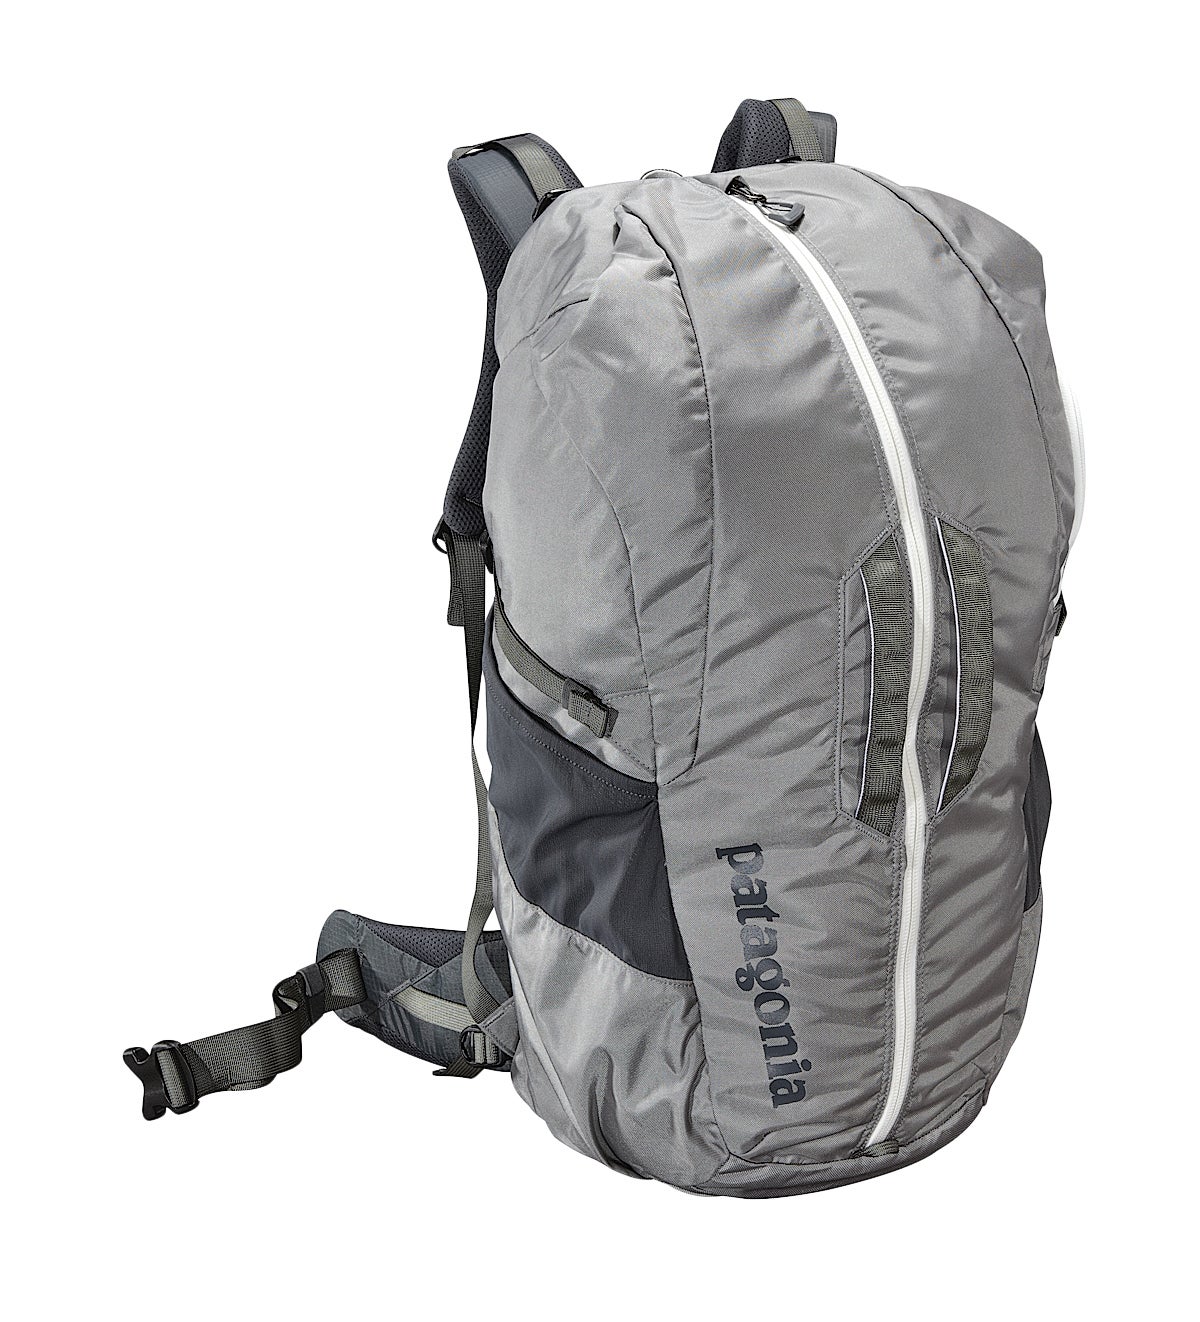 Petzl Bug Climbing Pack / Crag Bag | eBay